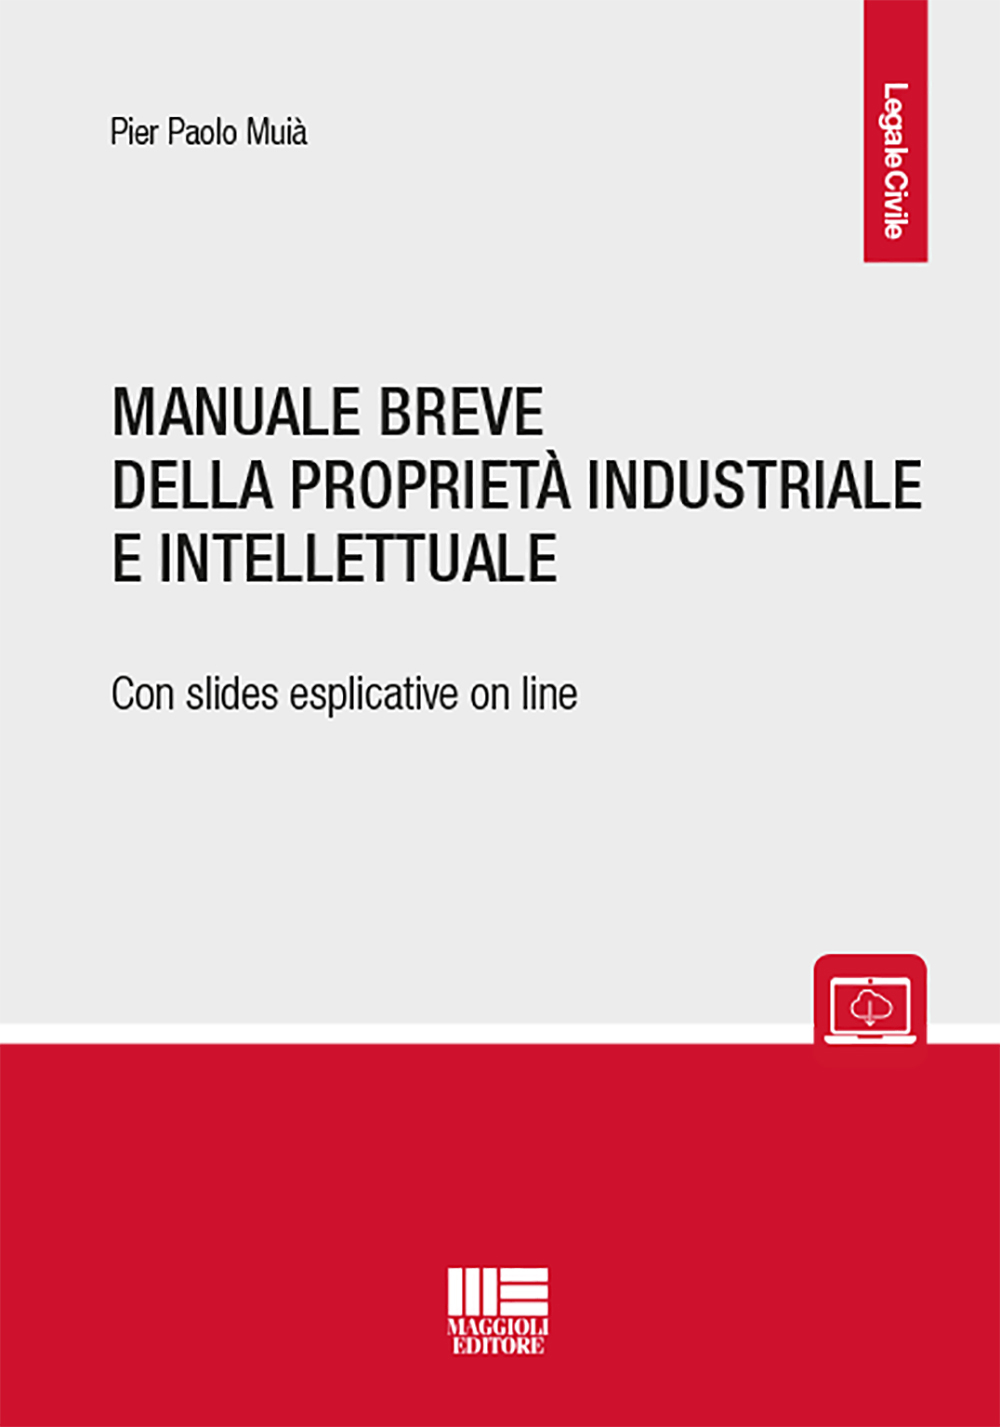 Manuale breve della proprietà industriale e intellettuale